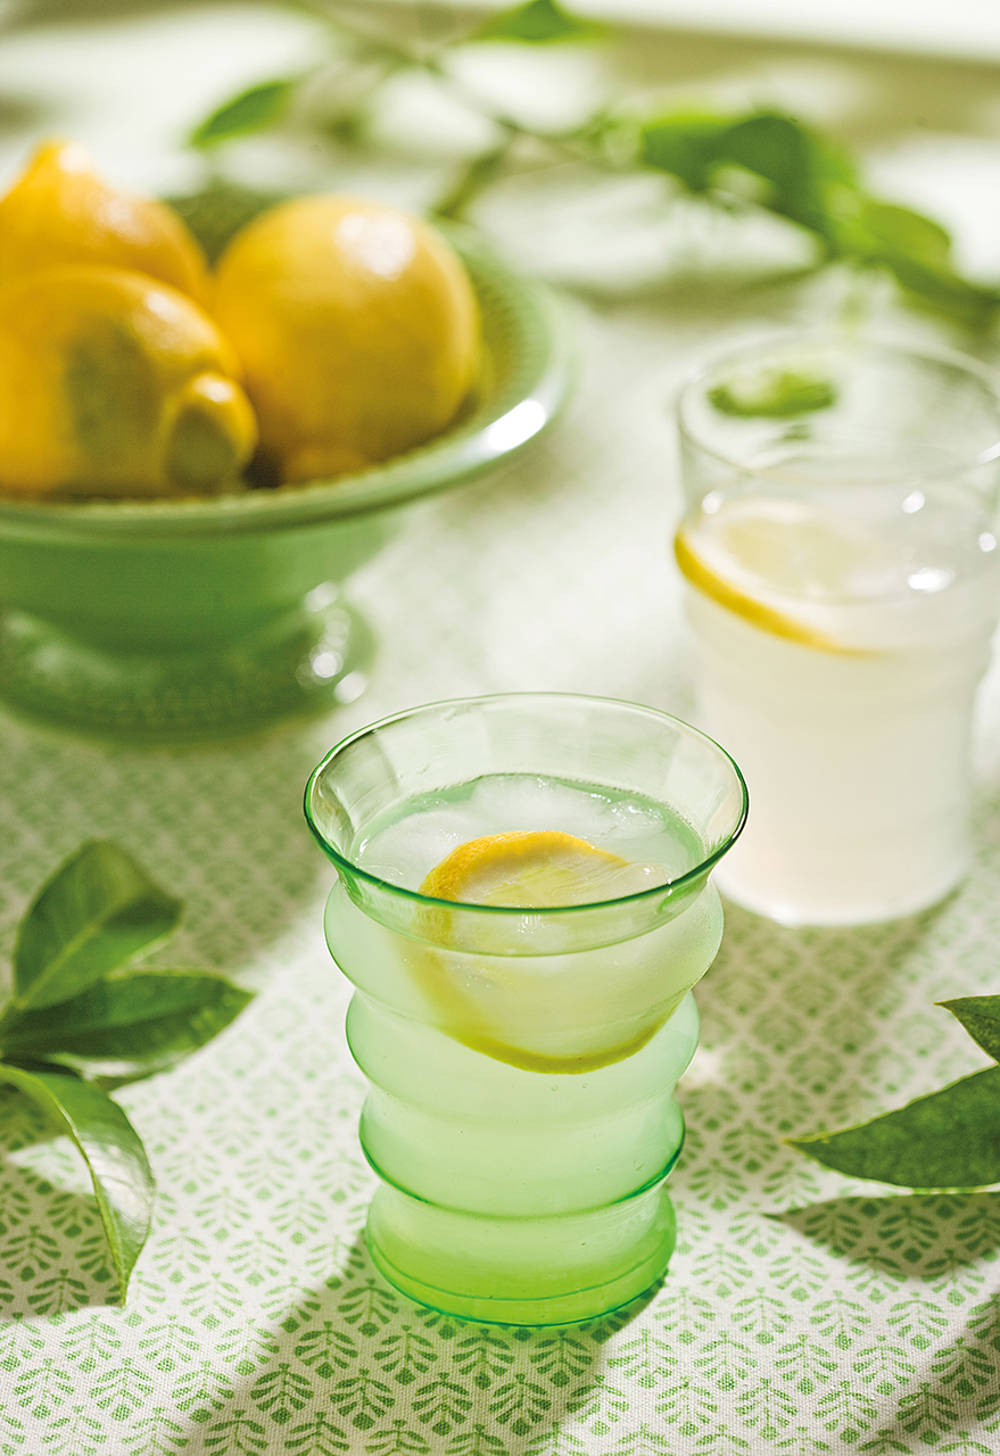 Beneficios del agua con limón en ayunas: ¿verdad o mito?